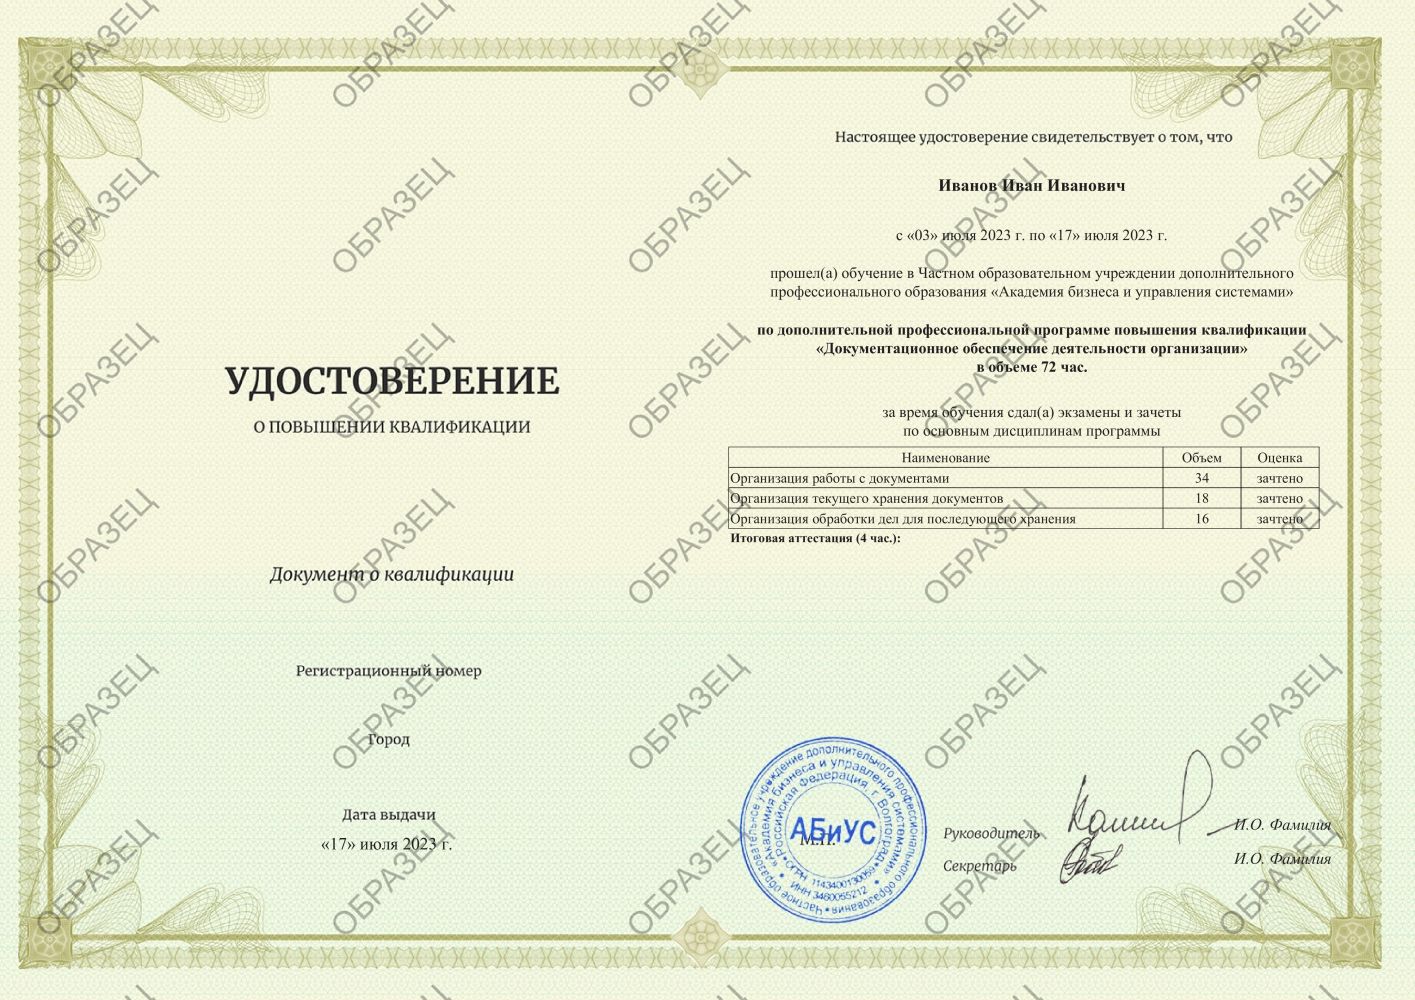 Удостоверение Документационное обеспечение деятельности организации 72 часа 4313 руб.